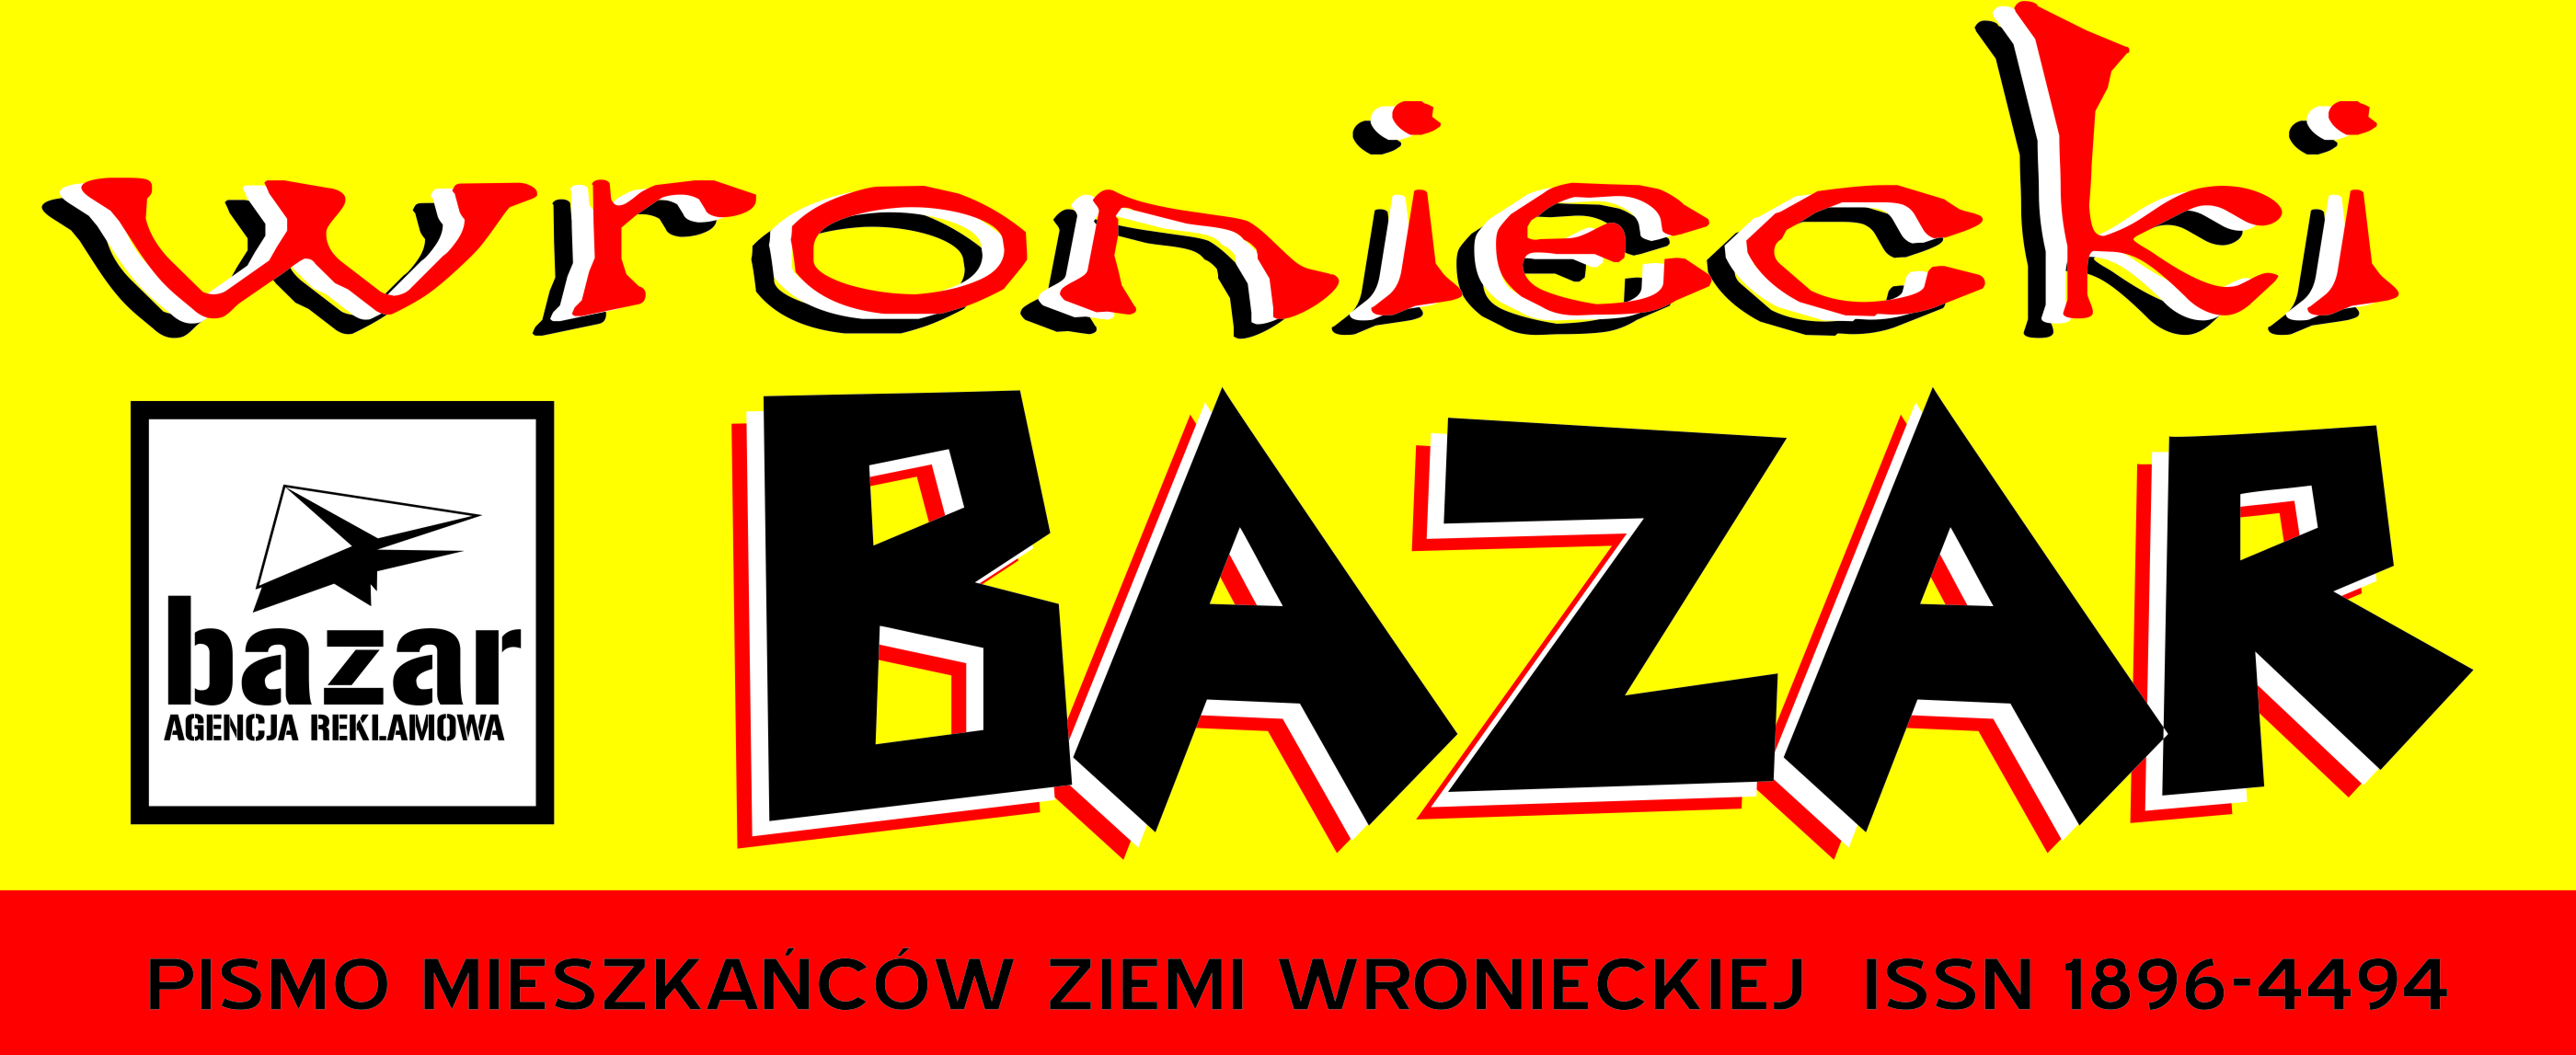 Wroniecki Bazar logo